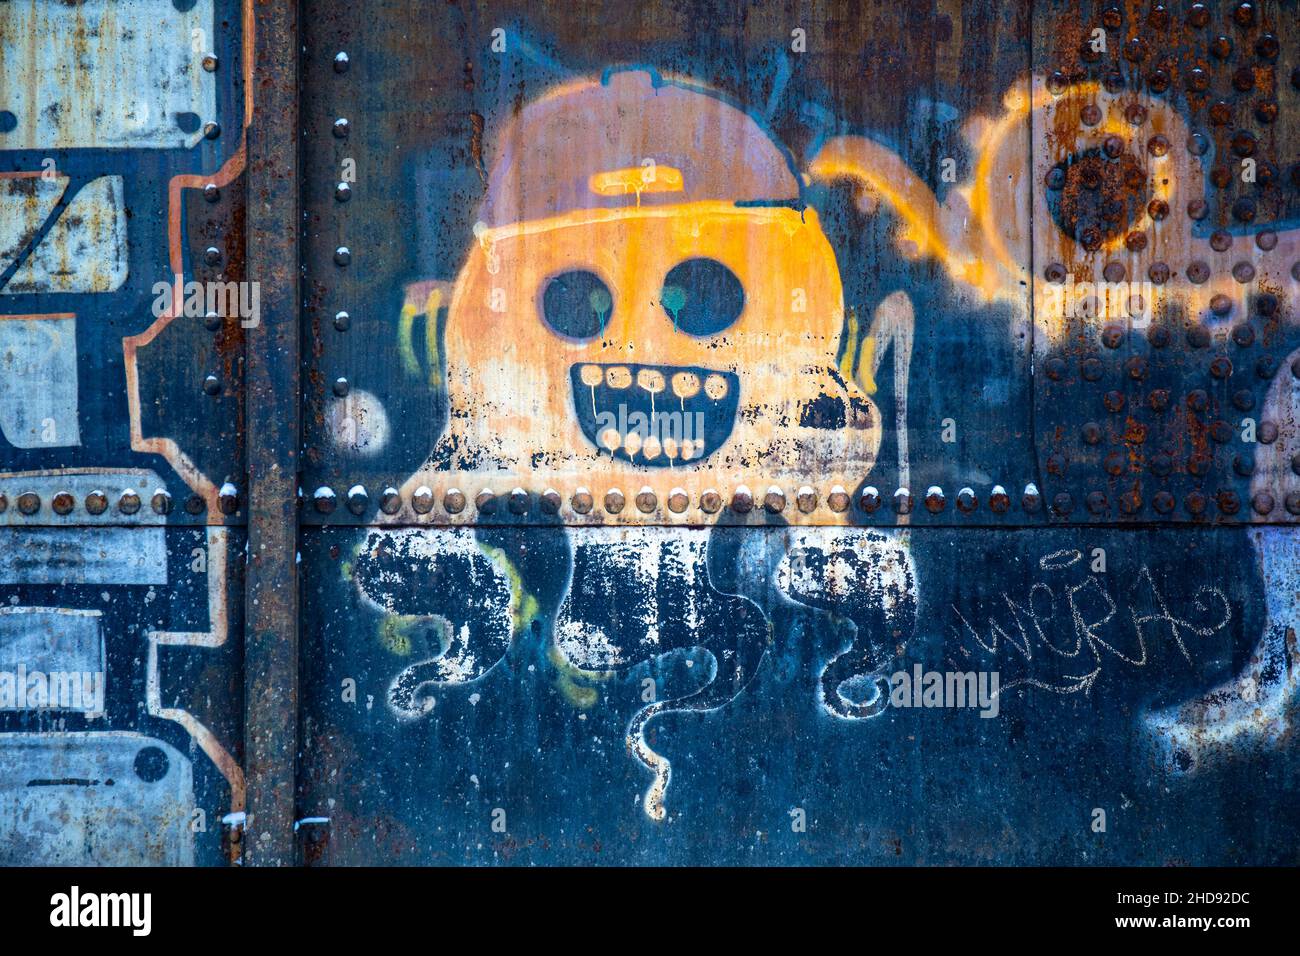 Street art. Weathered graffiti on a rusty metal surface. Stock Photo